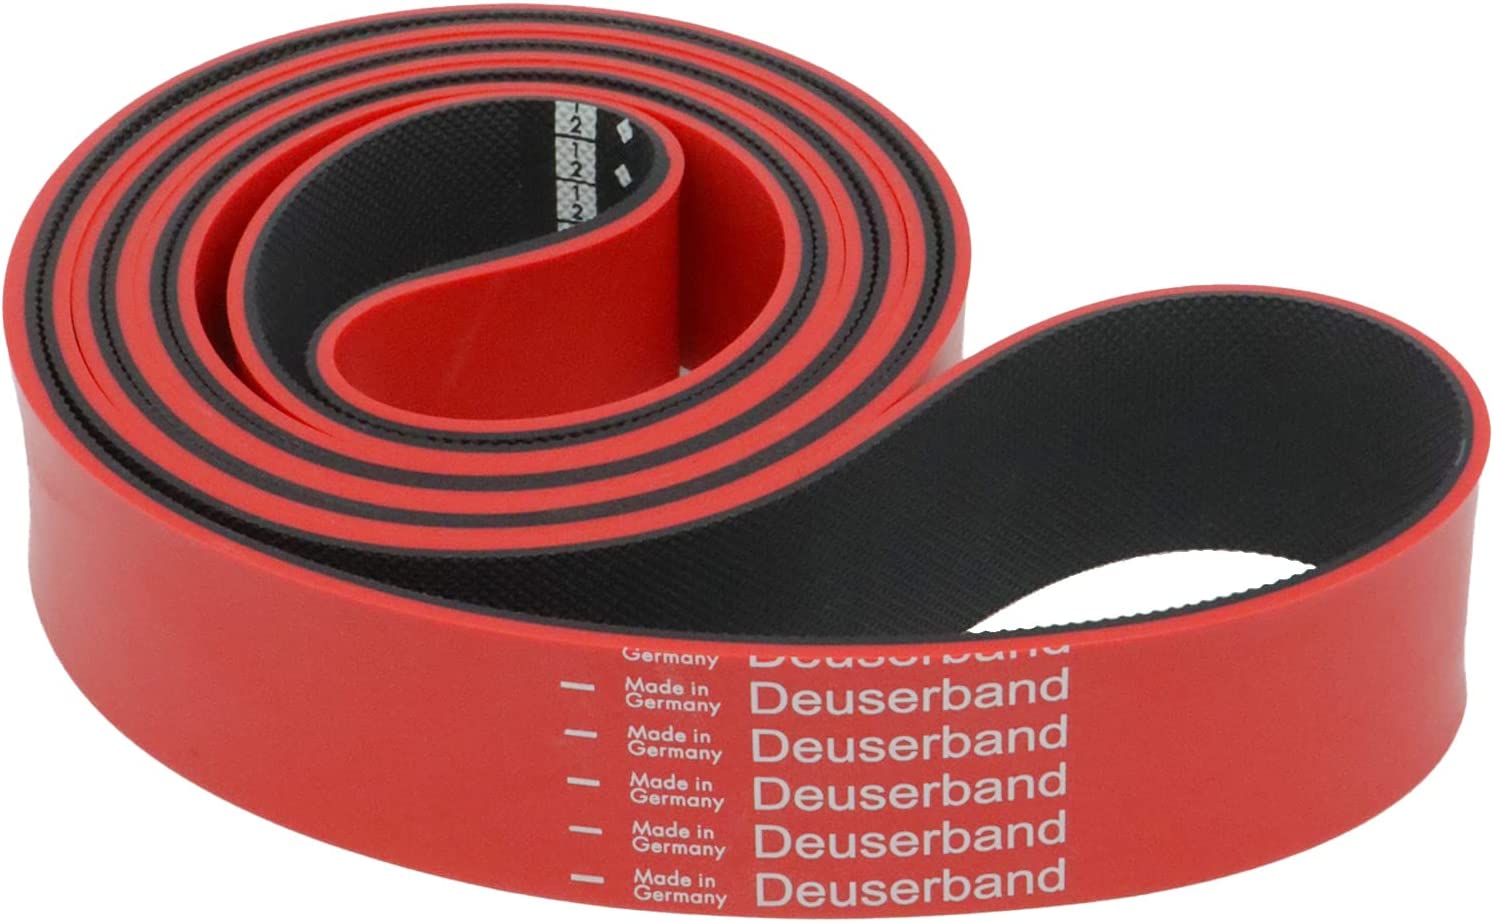 Deuser Band Original | Loop Band | für Sportler und Leistungssportler | perfekt zum Training unterwegs | aus Kautschuk | Made in Germany